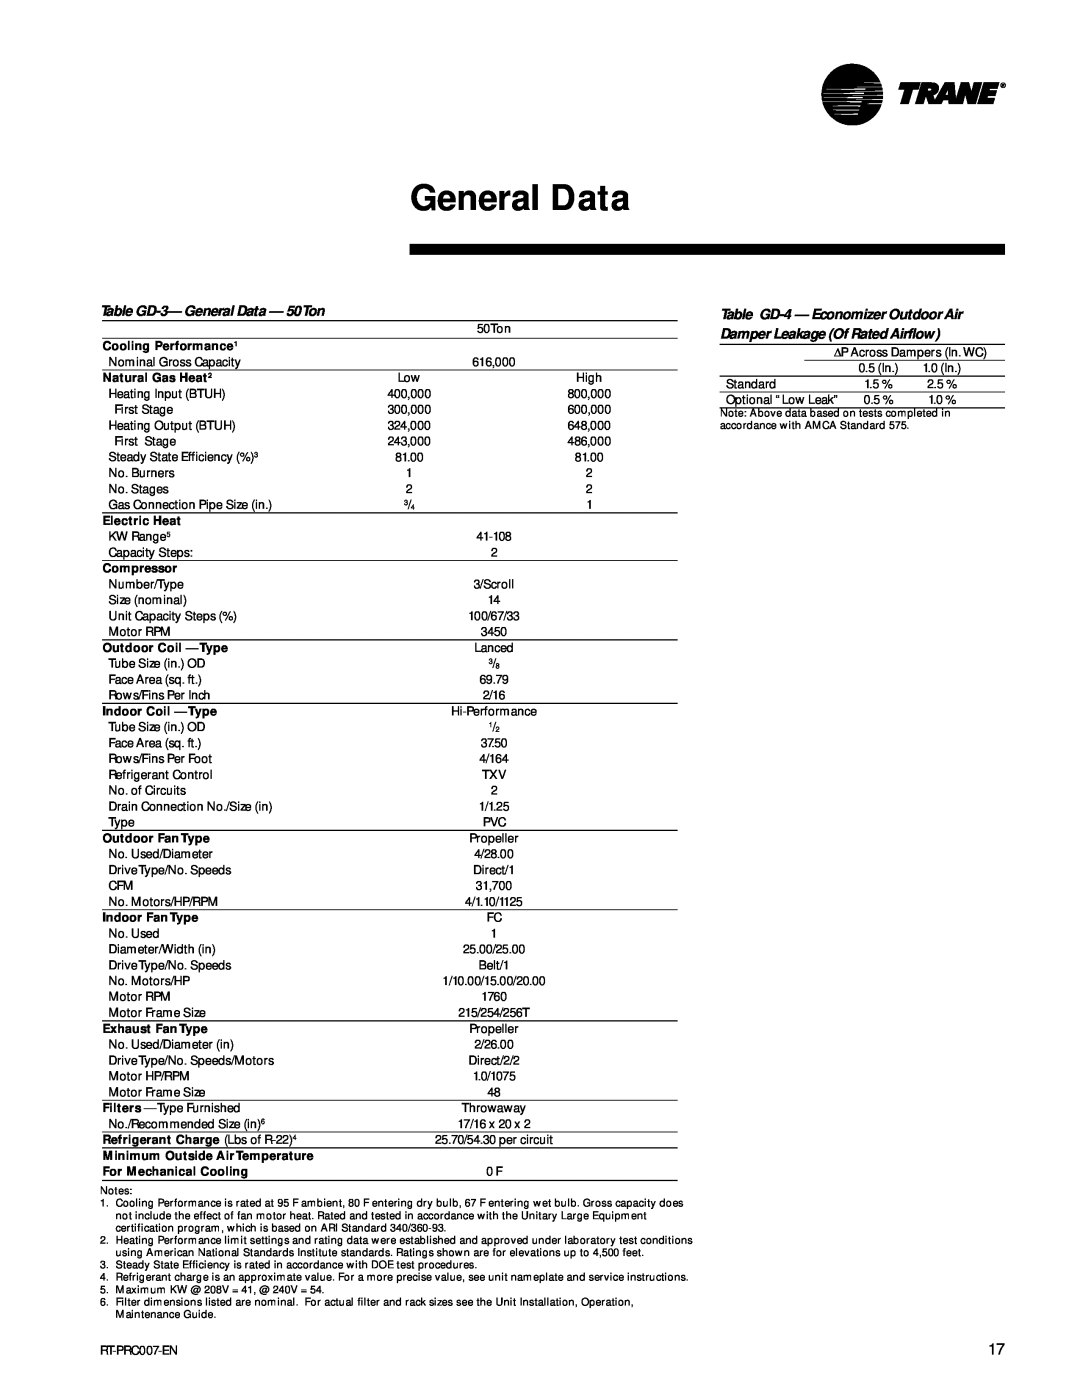 Trane RT-PRC007-EN manual Table GD-3-General Data - 50Ton 